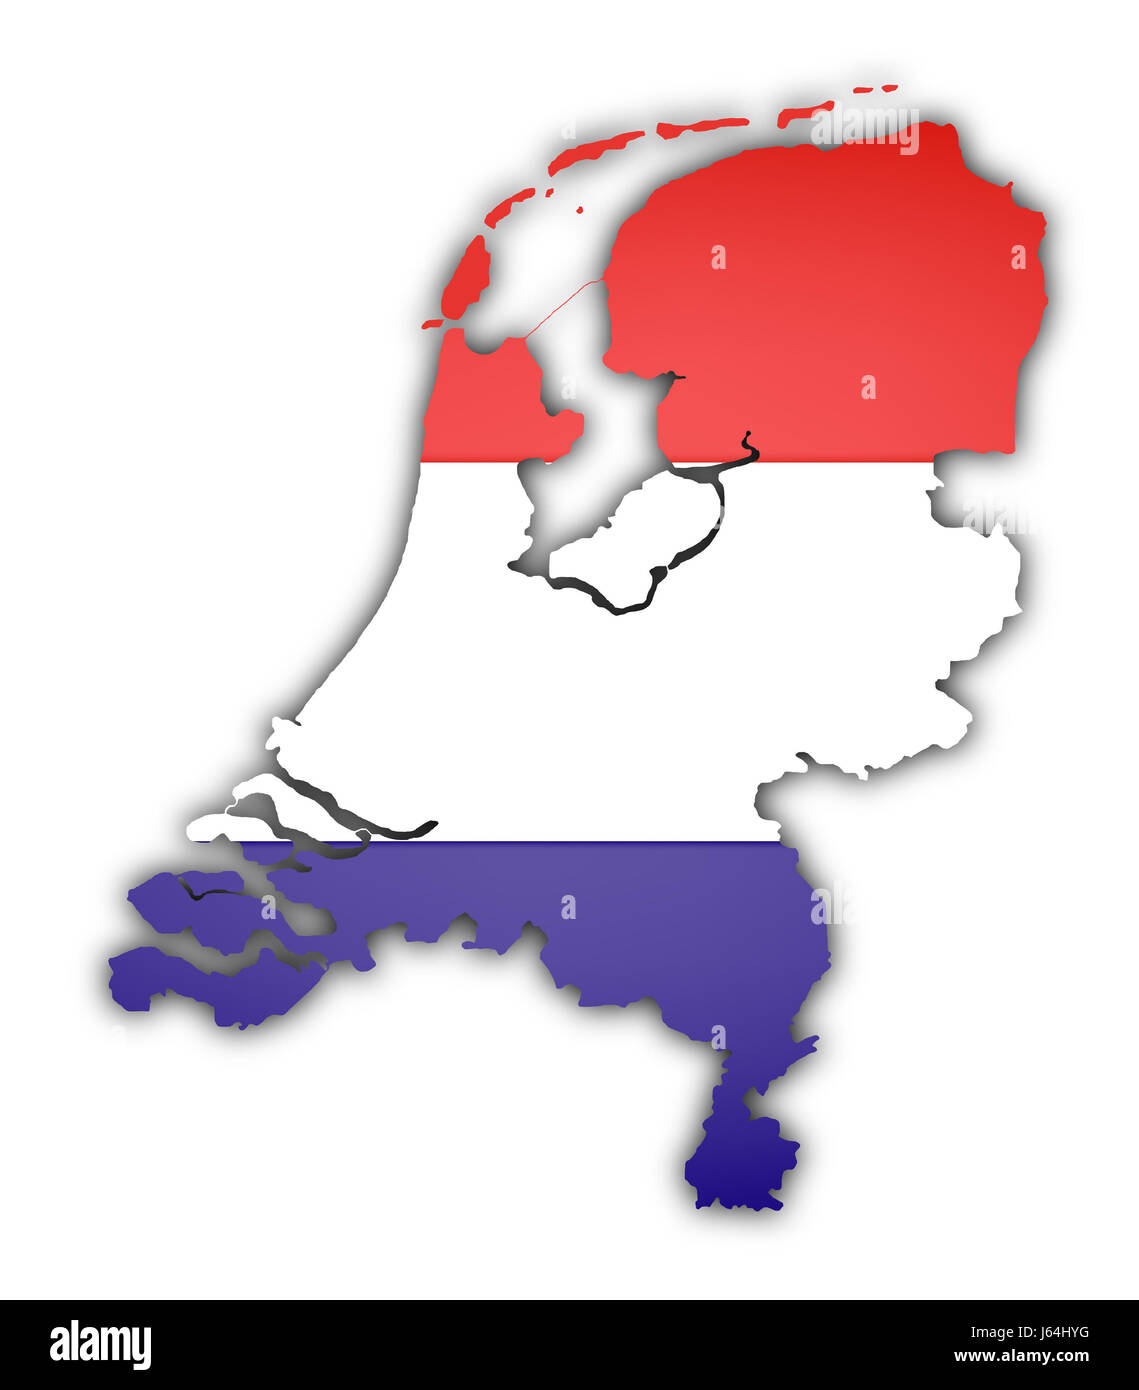 Européenne europe vierge caucasienne drapeau Pays-Bas Amsterdam carte du pays de l'Union européenne Banque D'Images